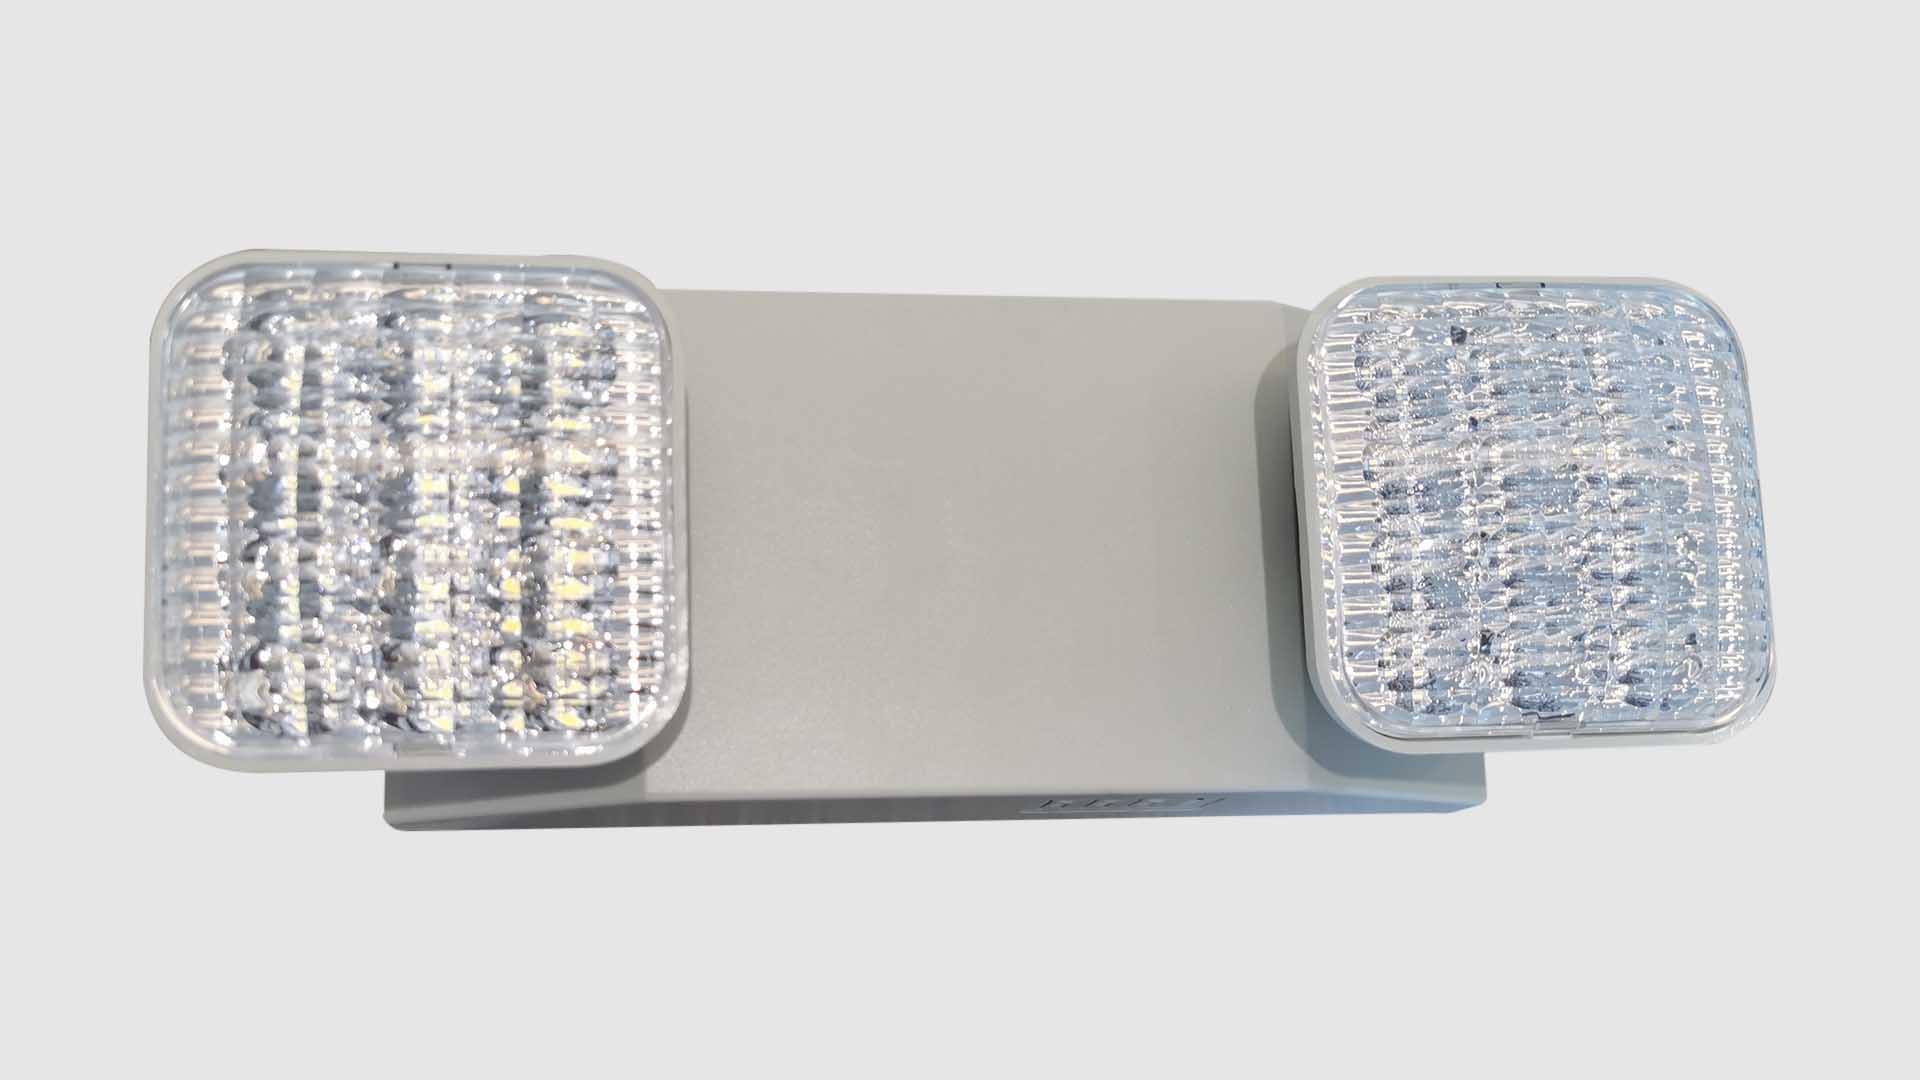 Zweiköpfiges LED-Notlicht SL-607 der Marke ZFE – Hergestellt von Guangdong Zhenhui Fire Technology